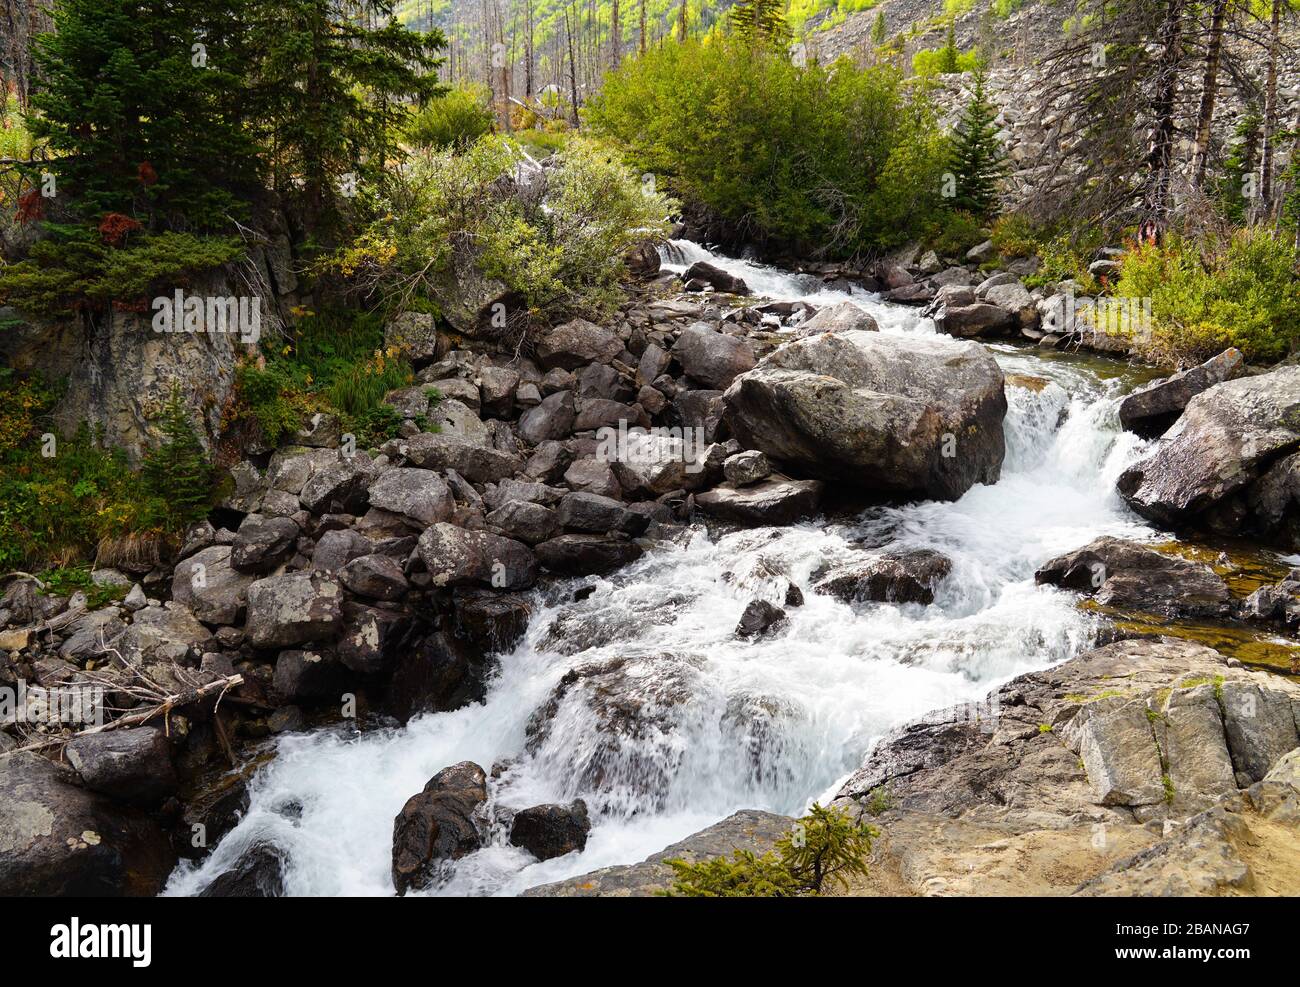 Ein schöner Bergwasserfall zieht sich durch einen Wald mit den wechselnden Farben des Herbstes. Stockfoto